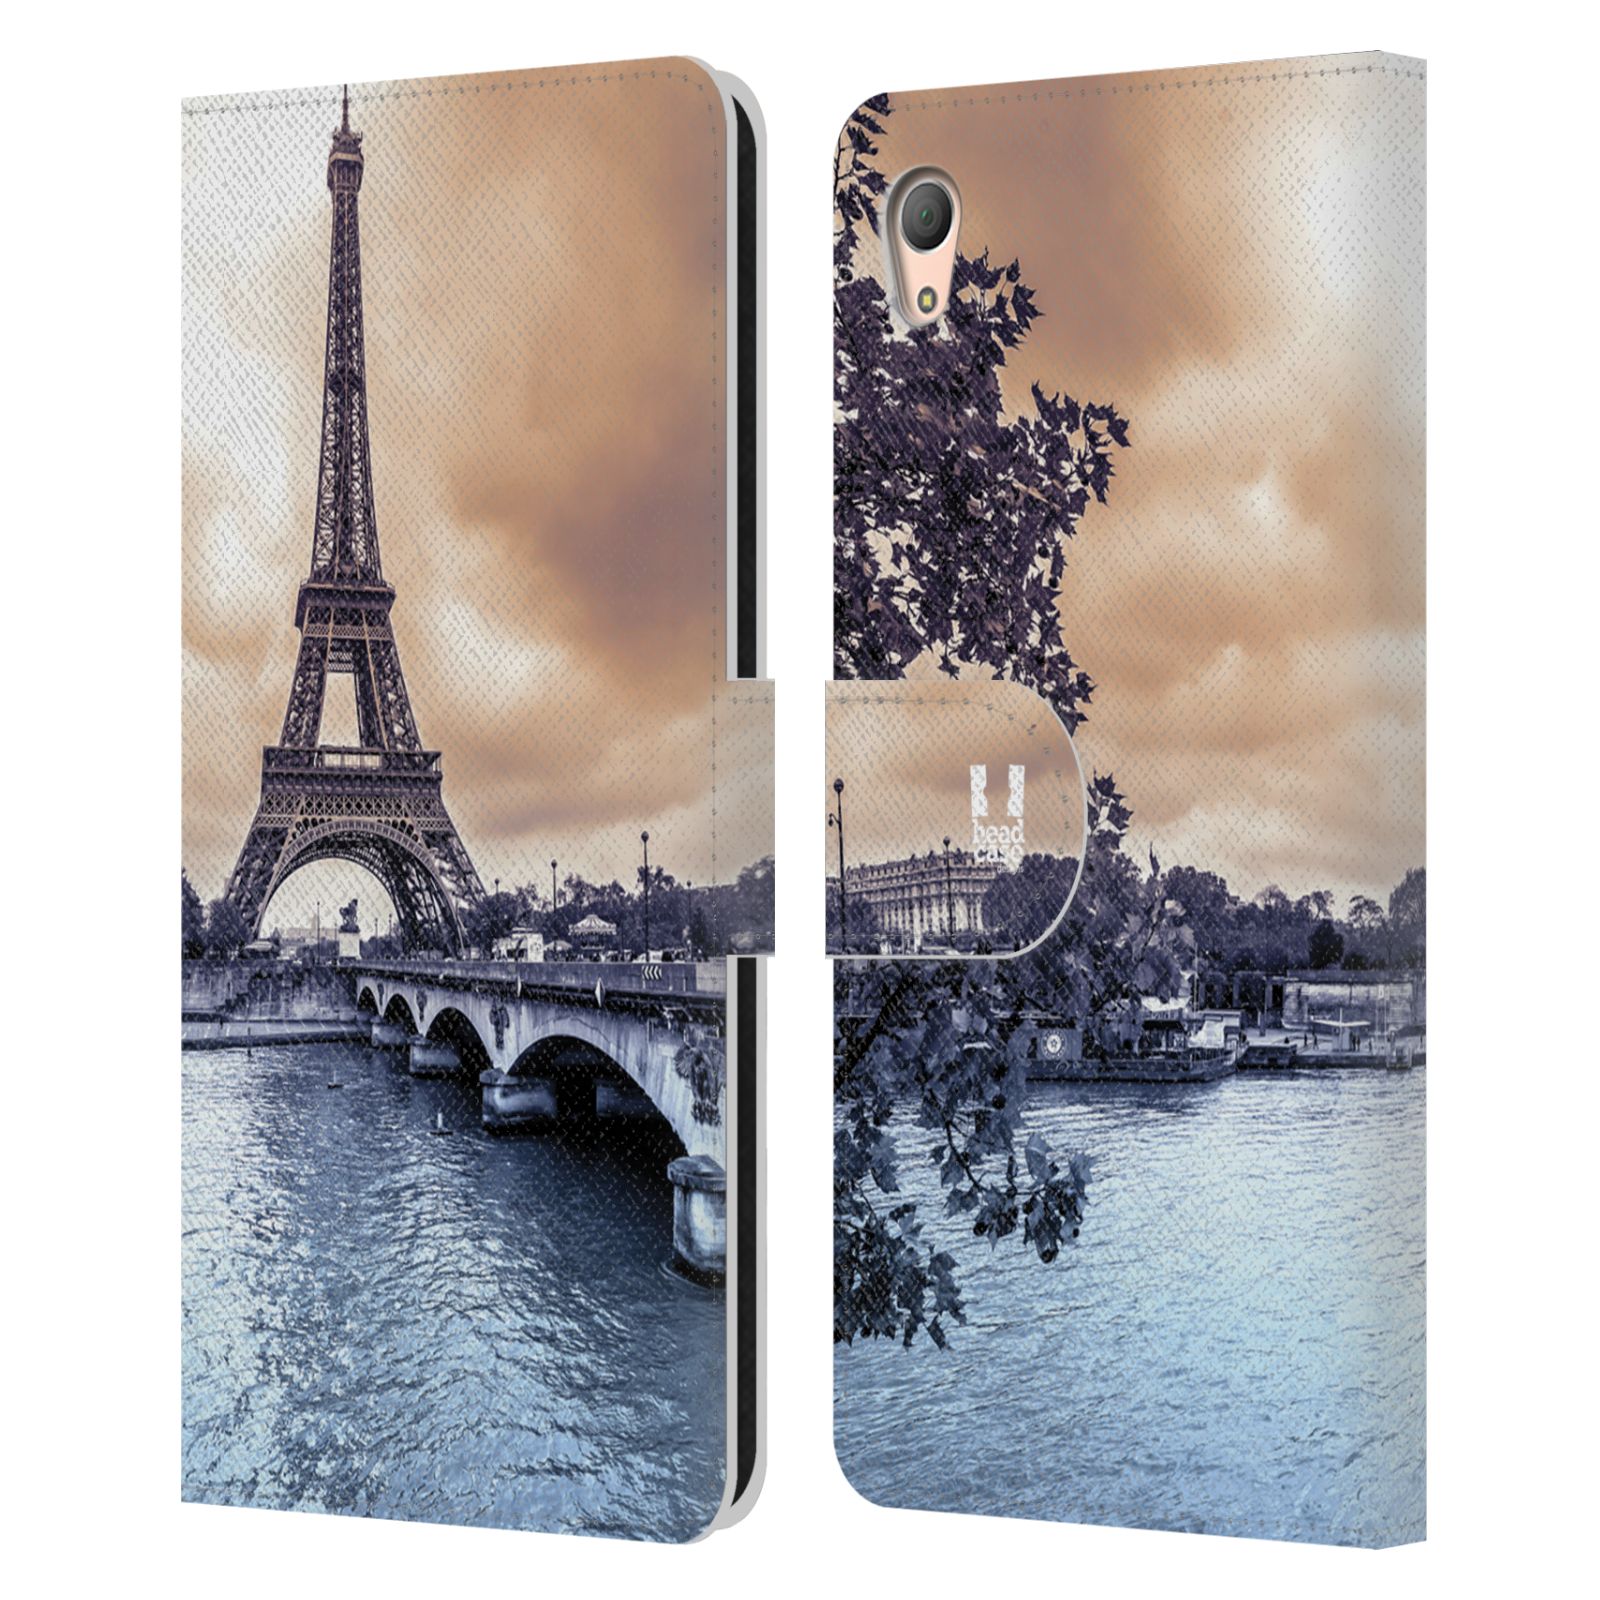 Pouzdro na mobil Sony Xperia Z3 PLUS - Head Case - Paříž Eiffelova věž